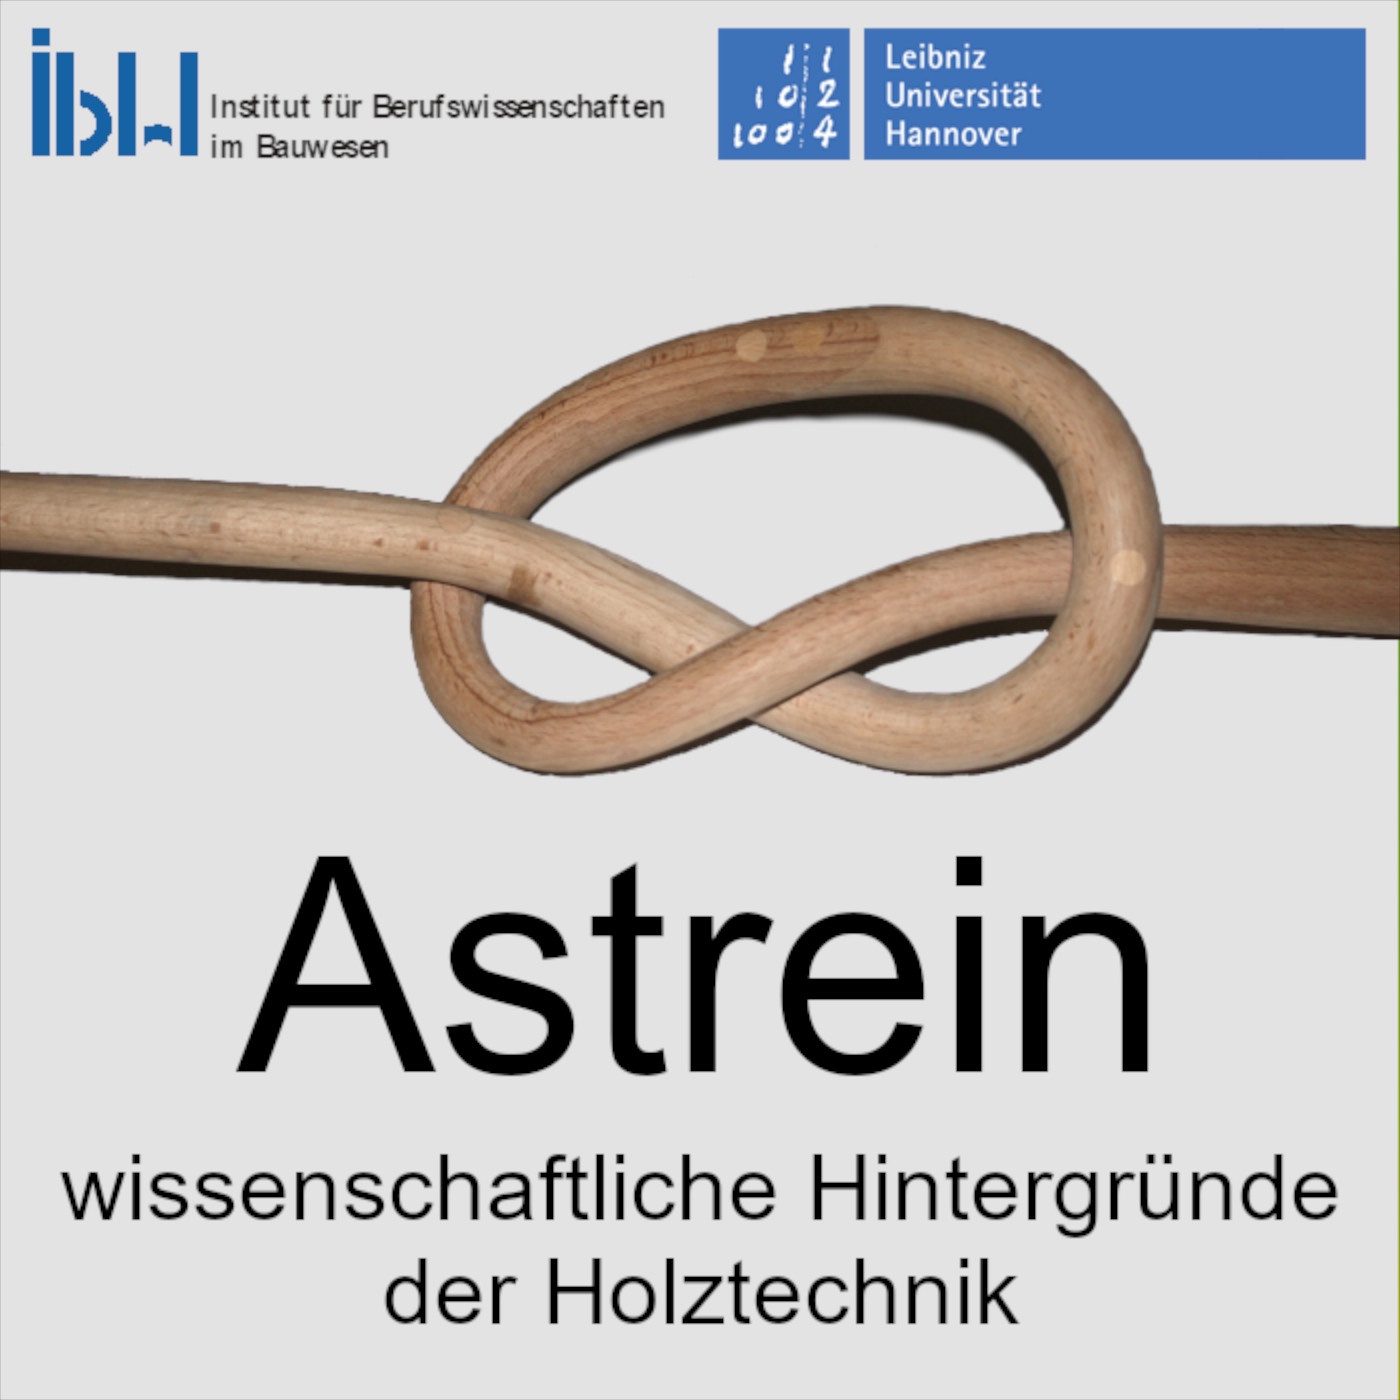 Astrein - wissenschaftliche Hintergründe der Holztechnik